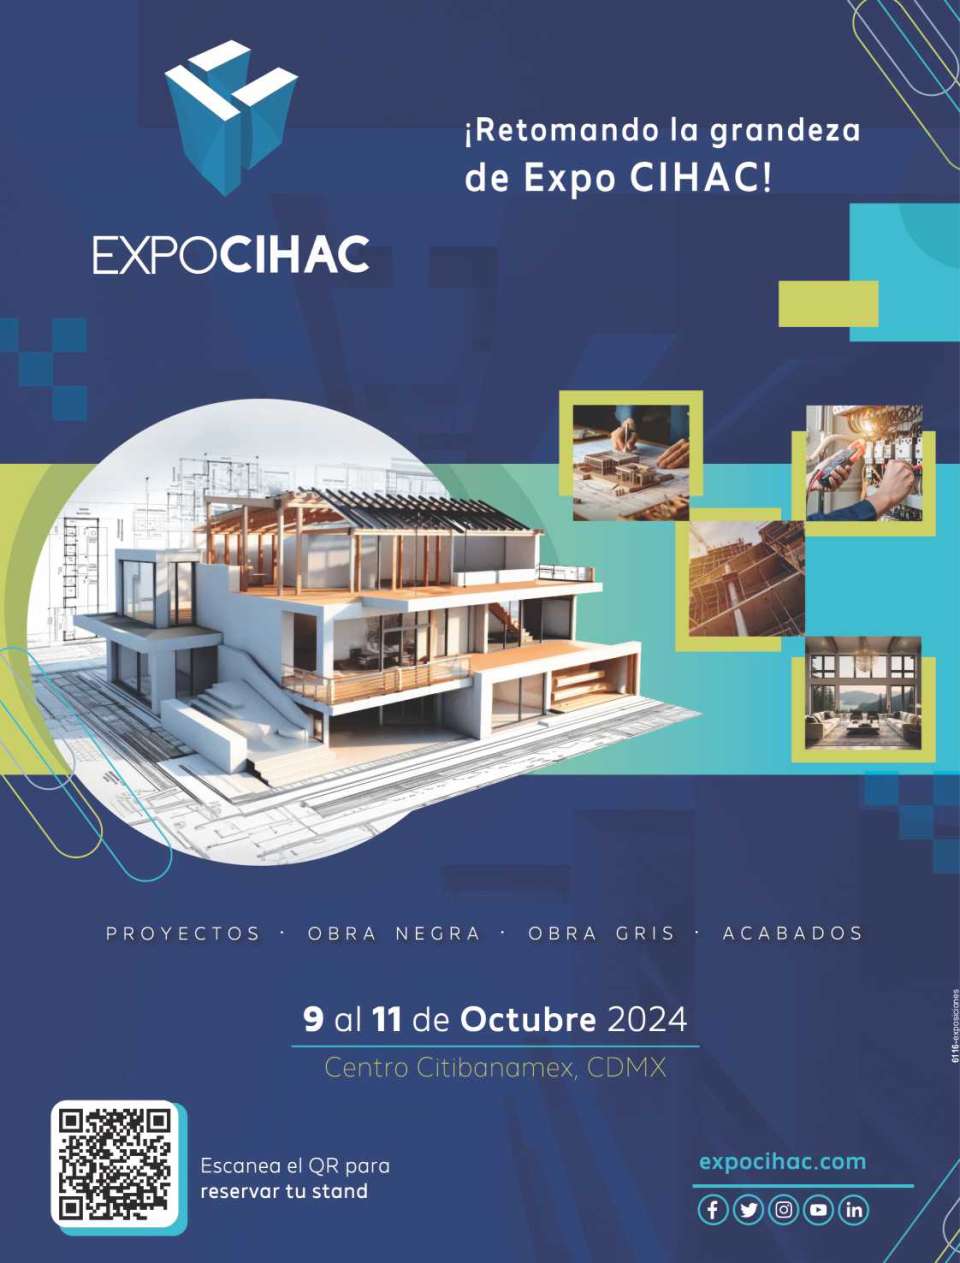 Expo CIHAC, del 9 al 11 de Octubre 2024 en Centro CitiBanamex, Ciudad de Mexico.